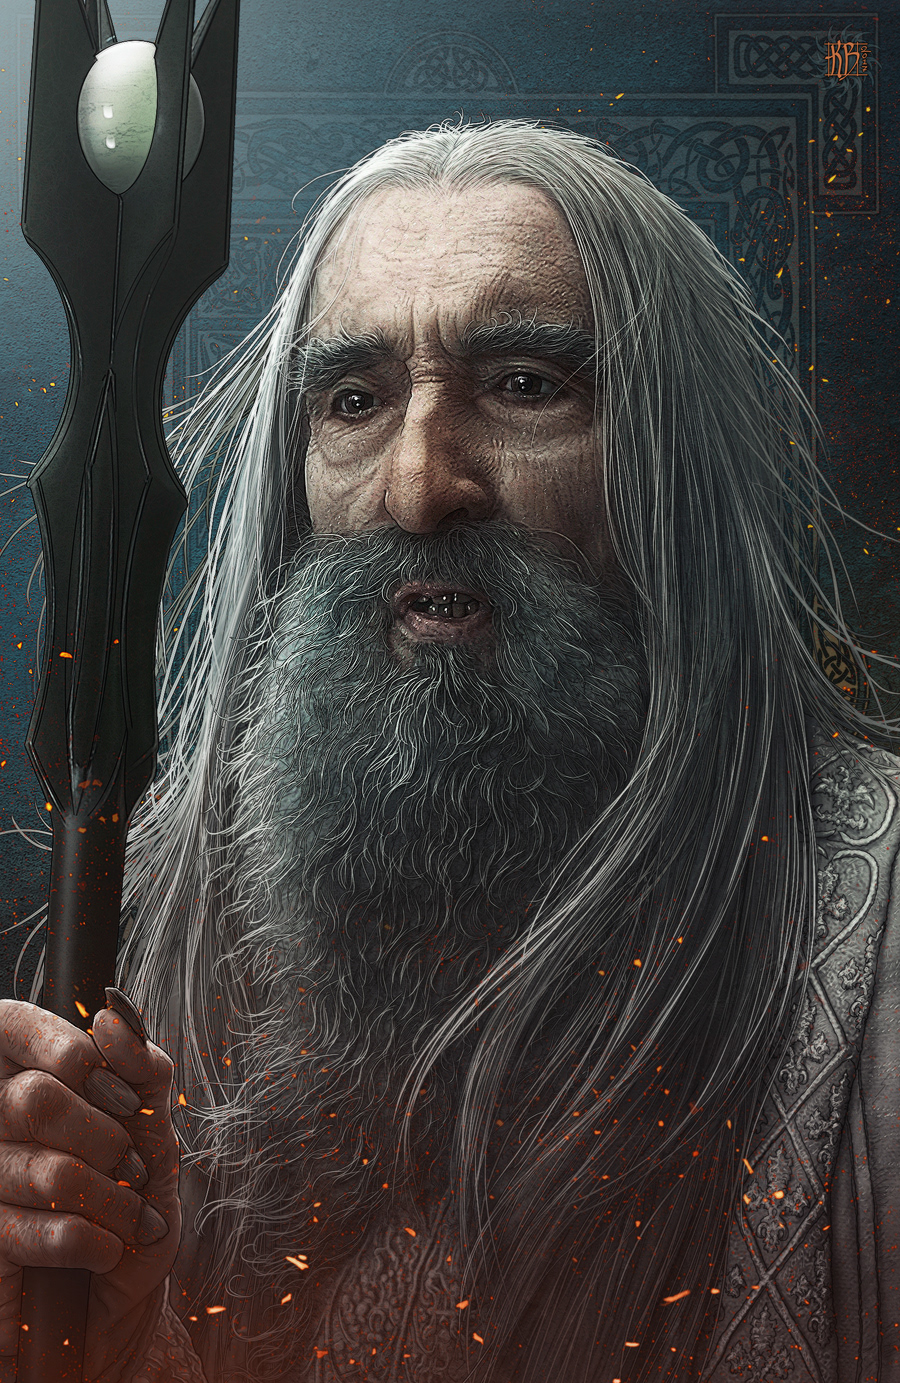 digitalart digitalpainting fanart fantasyart hobbit hobbitart LOTR lotrart portrait saruman